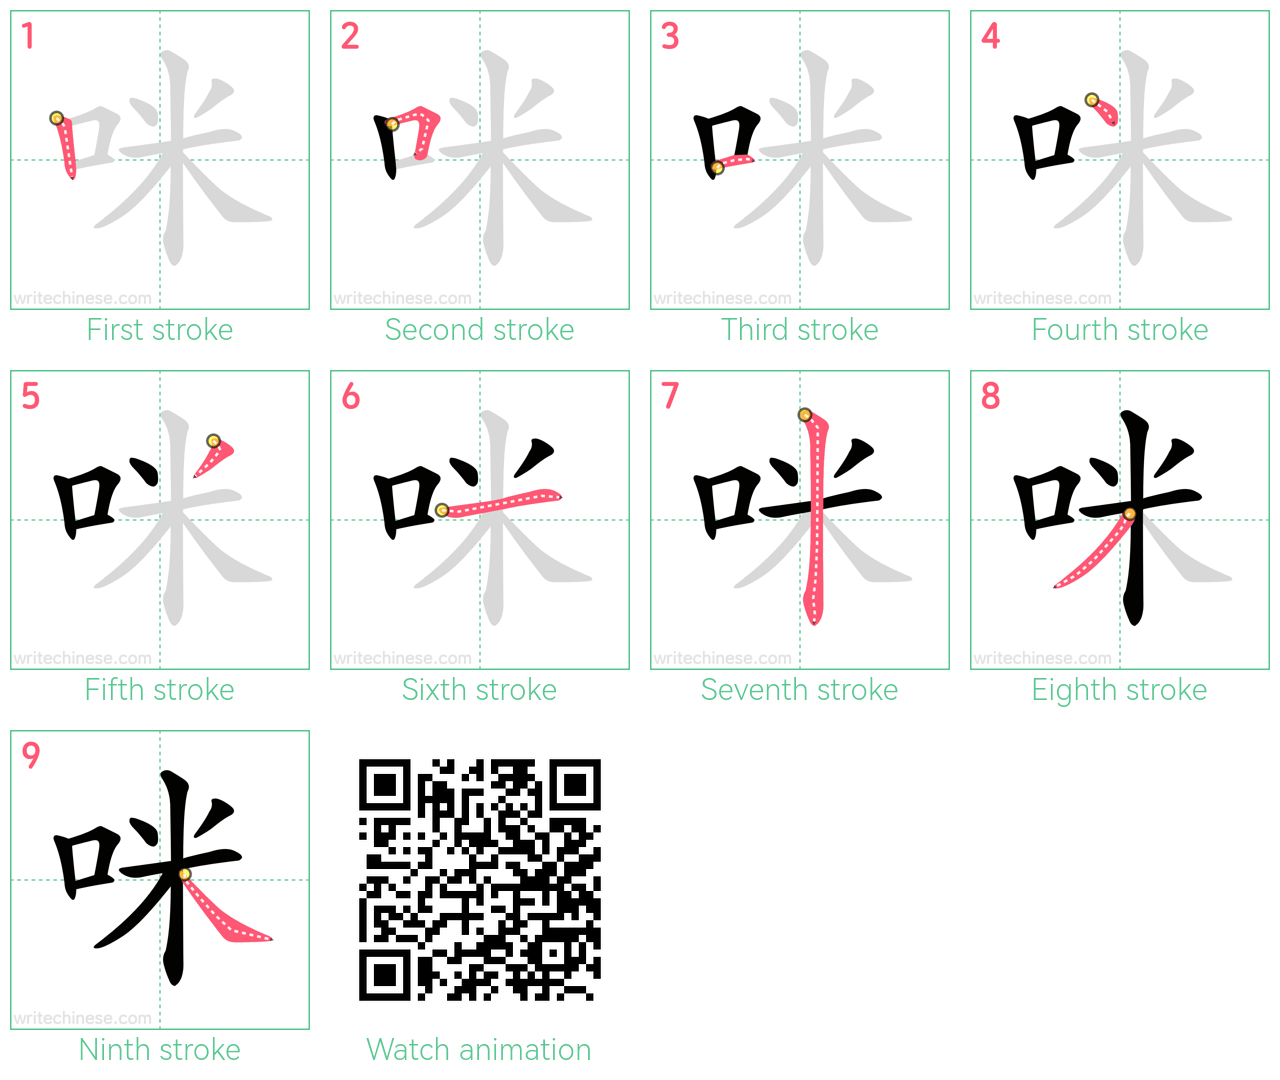 咪 step-by-step stroke order diagrams